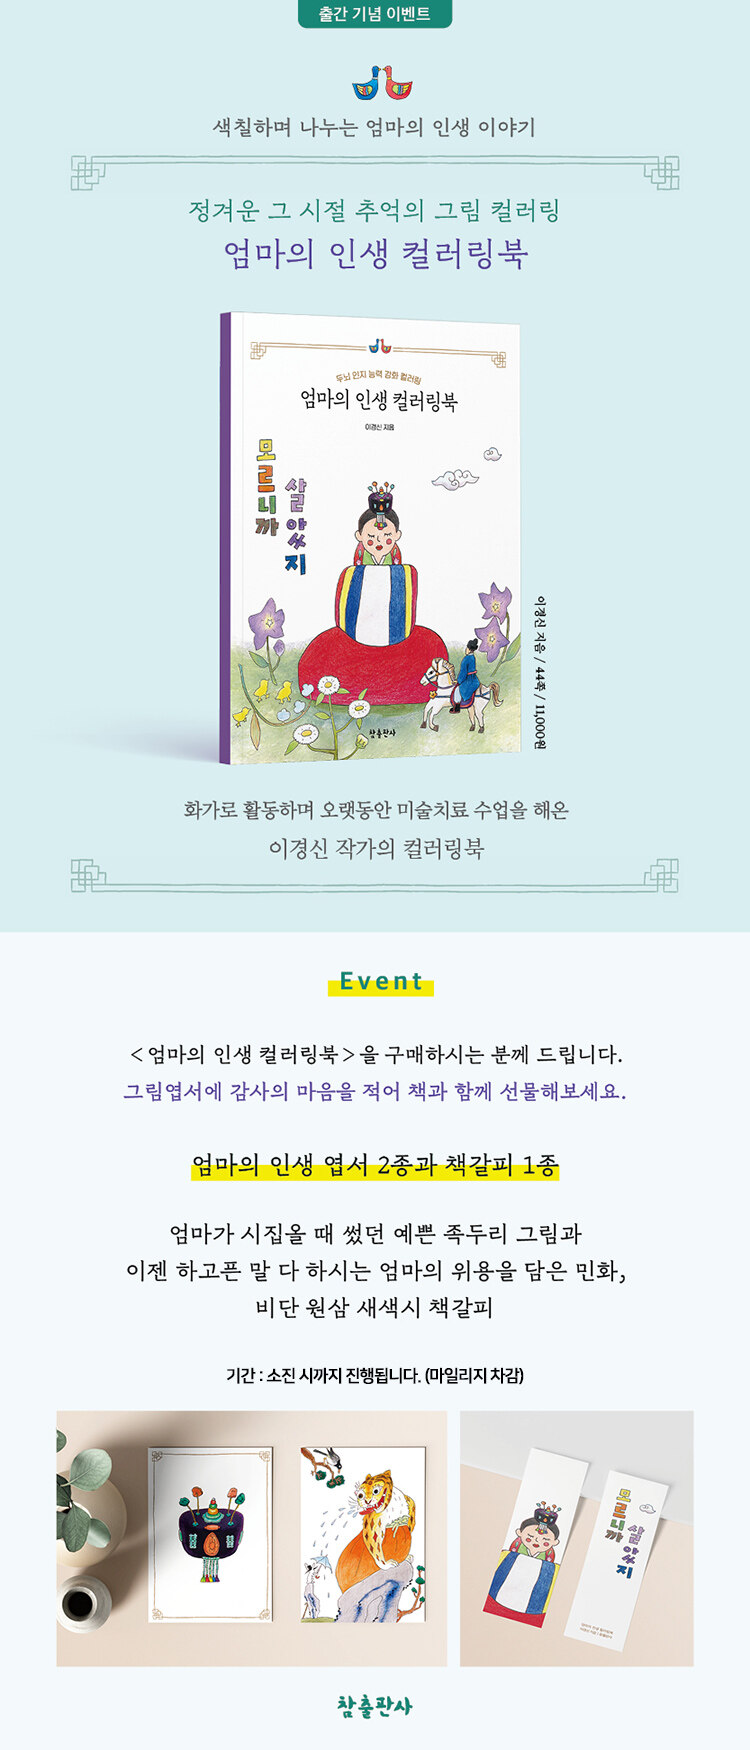 <엄마의 인생 컬러링북> 출간 기념 이벤트